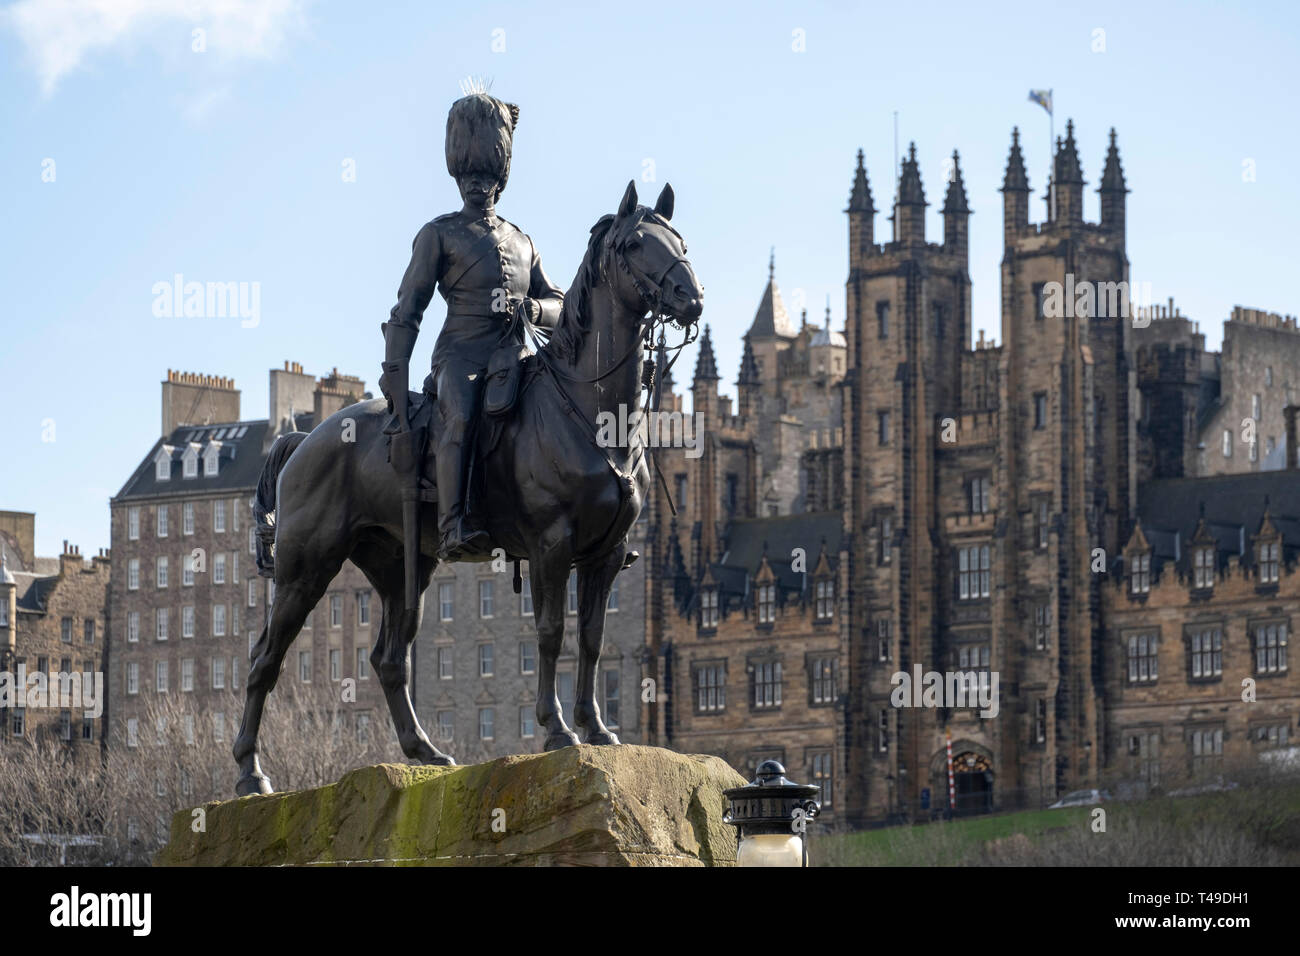 Royal Scots Greys Guerre des Boers statue équestre à Édimbourg, Écosse, Royaume-Uni, Europe Banque D'Images